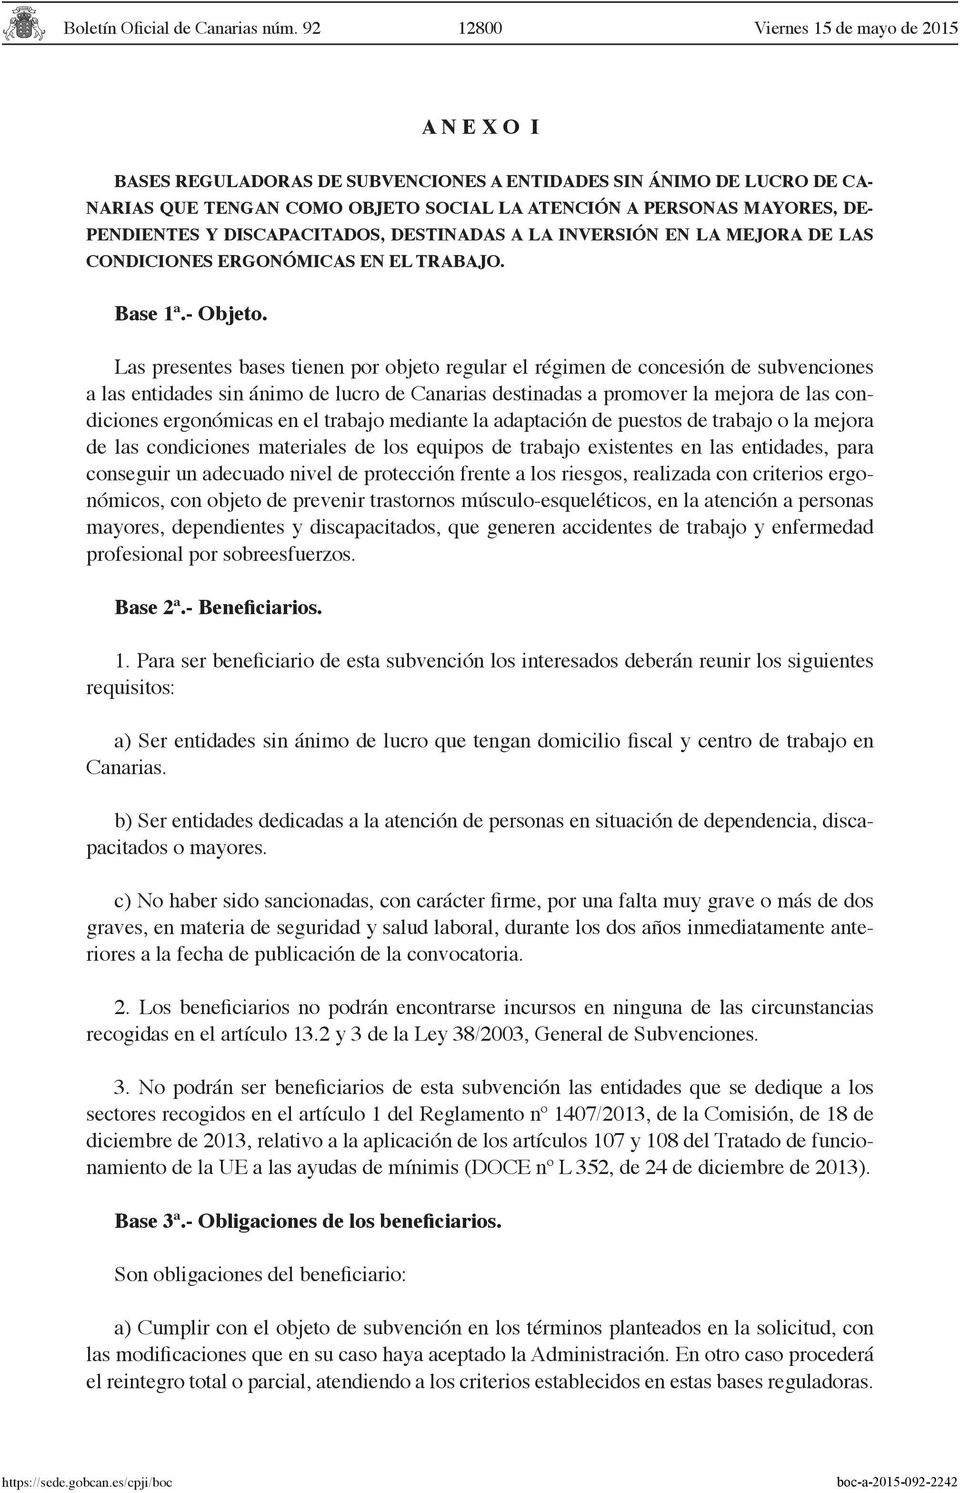 Las presentes bases tienen por objeto regular el régimen de concesión de subvenciones a las entidades sin ánimo de lucro de Canarias destinadas a promover la mejora de las condiciones ergonómicas en